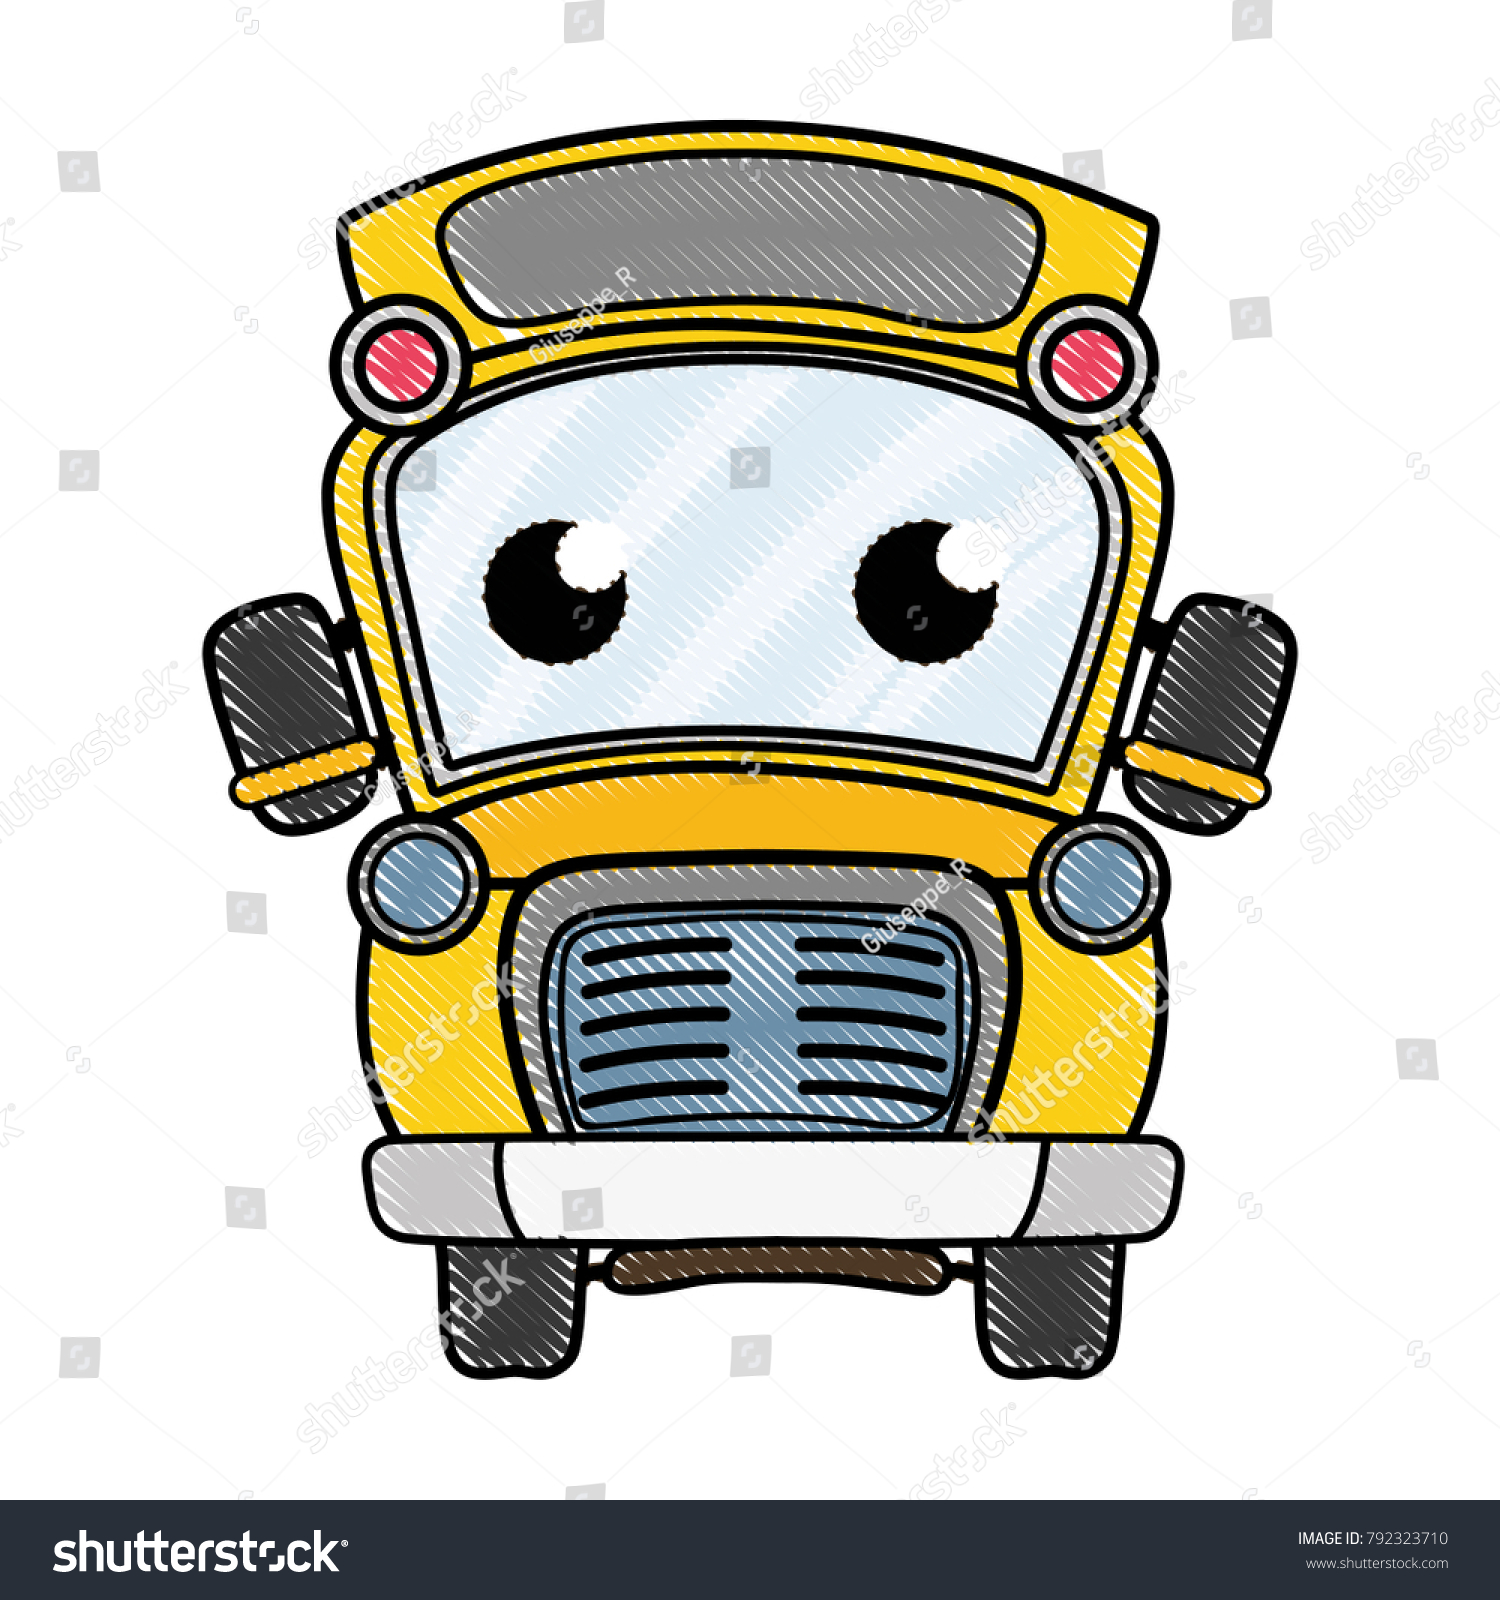 Grated Cute Tender School Bus Kawaii: стоковая векторная графика (без лицен...